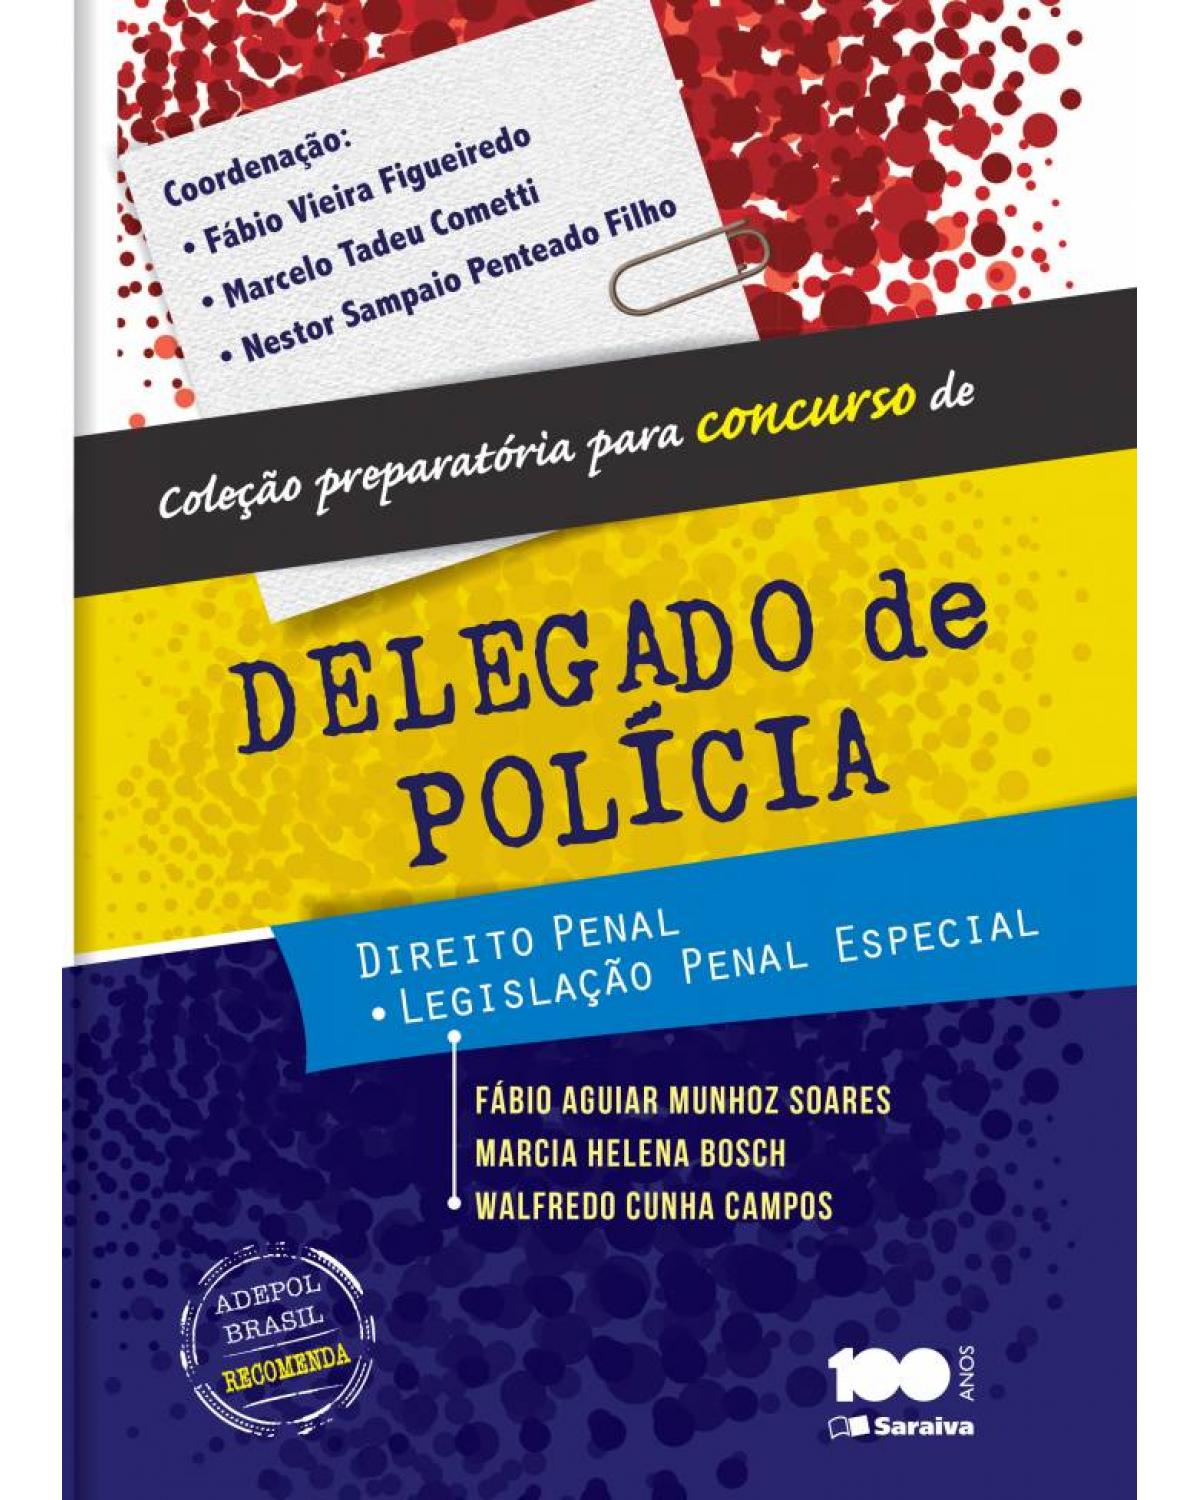 Direito penal - Legislação penal especial - 1ª Edição | 2014